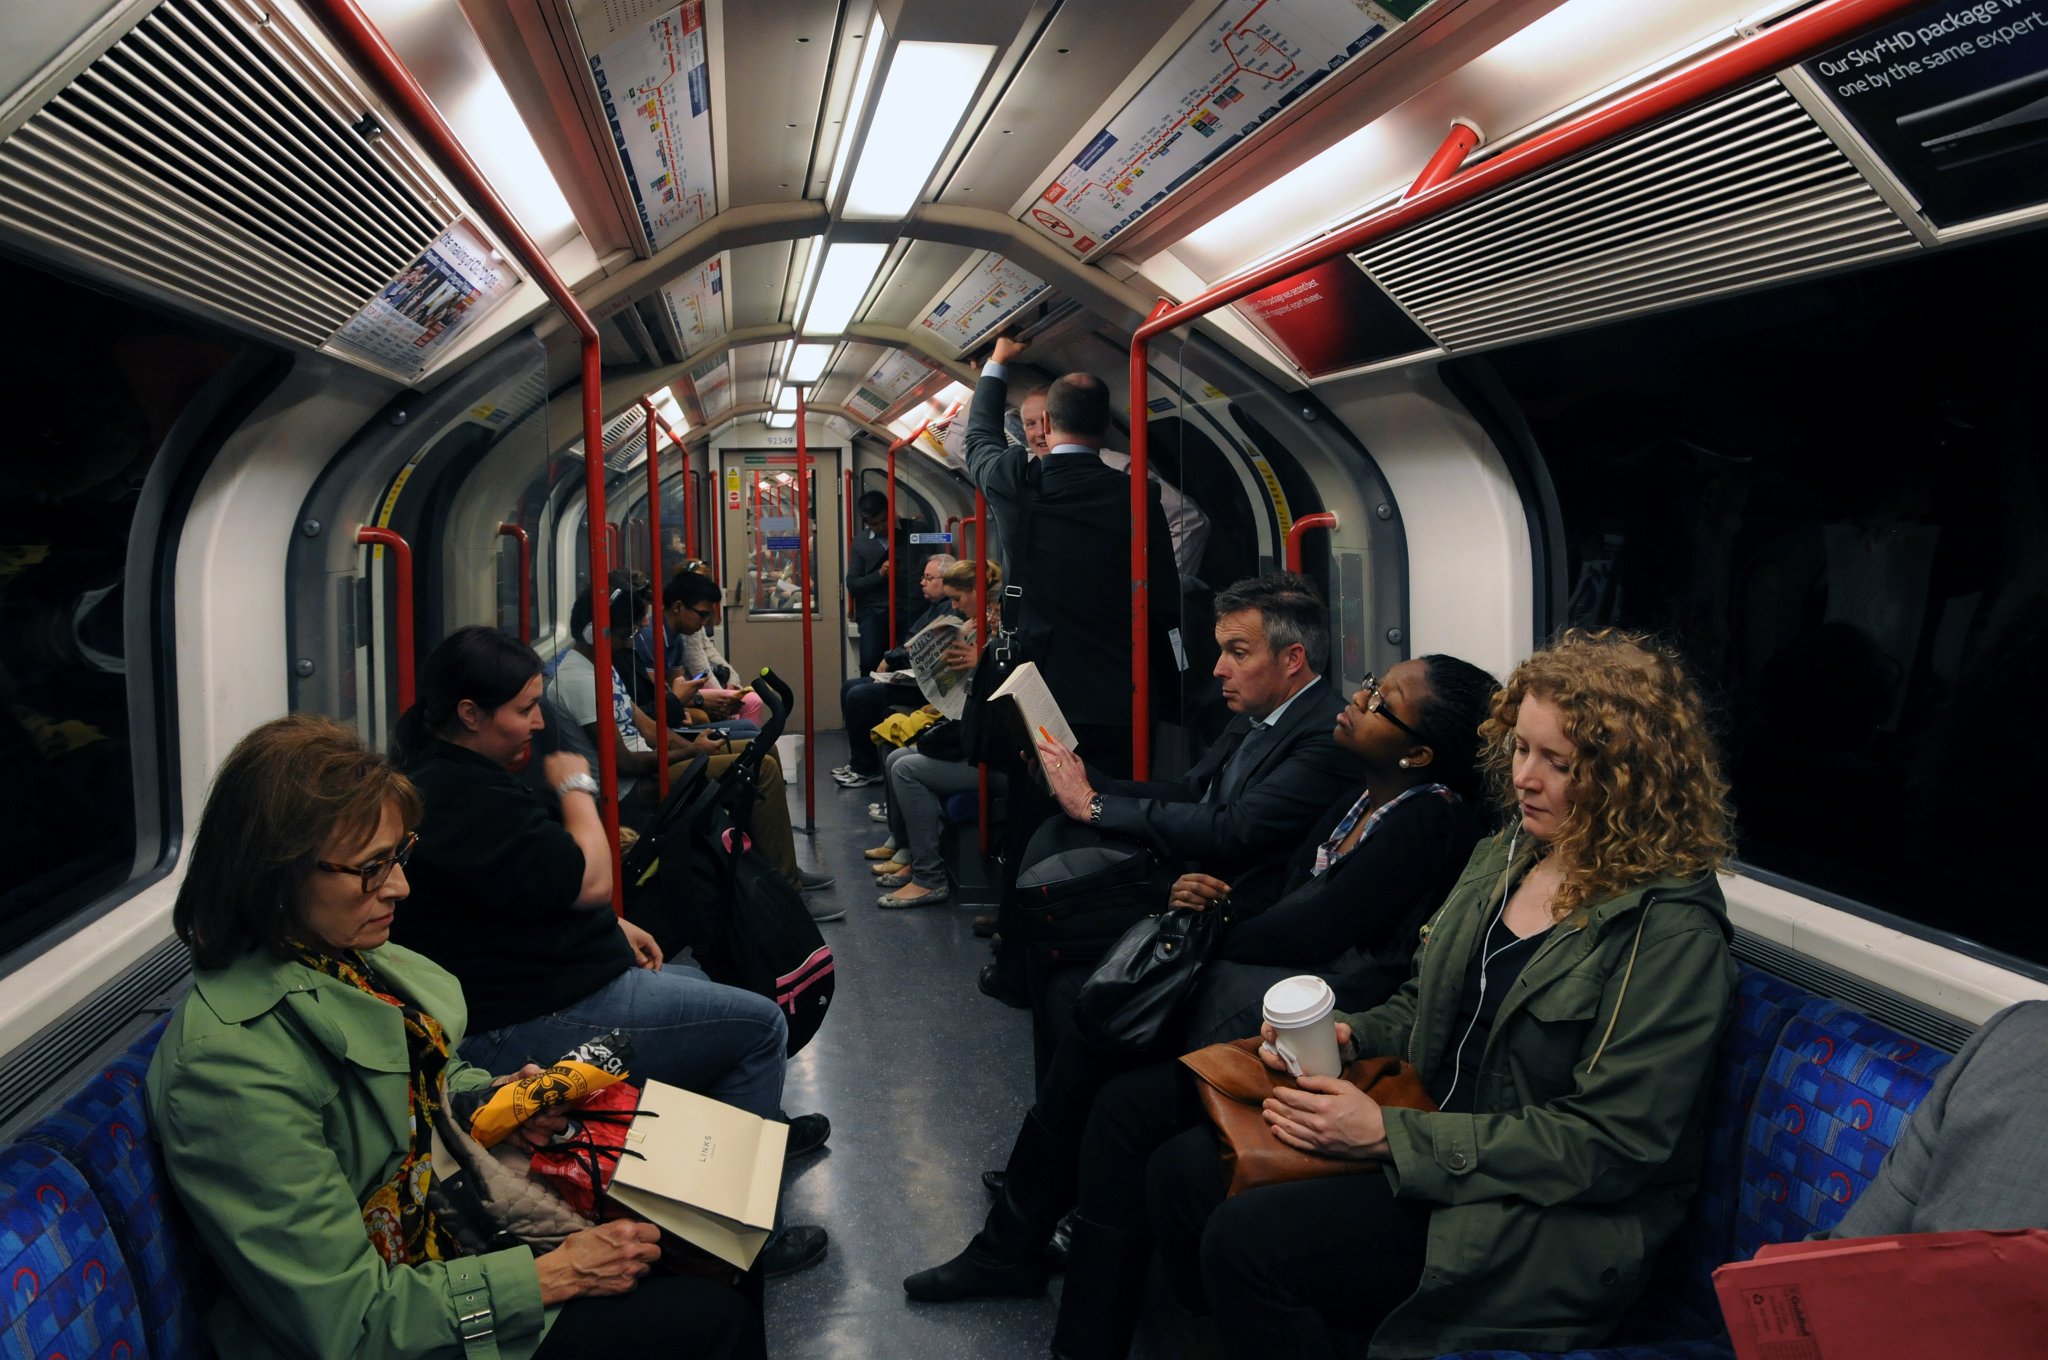 DSC_2762_1.jpg - Londýnské metro (London Underground) je běžně označován jménem Tube. Metro v současnosti zahrnuje 273 stanic a více než 408 km trati. V období let 2004 až 2005 přepravilo metro rekordní počet cestujících 976 miliónů, což představuje 2 670 000 lidí denně.